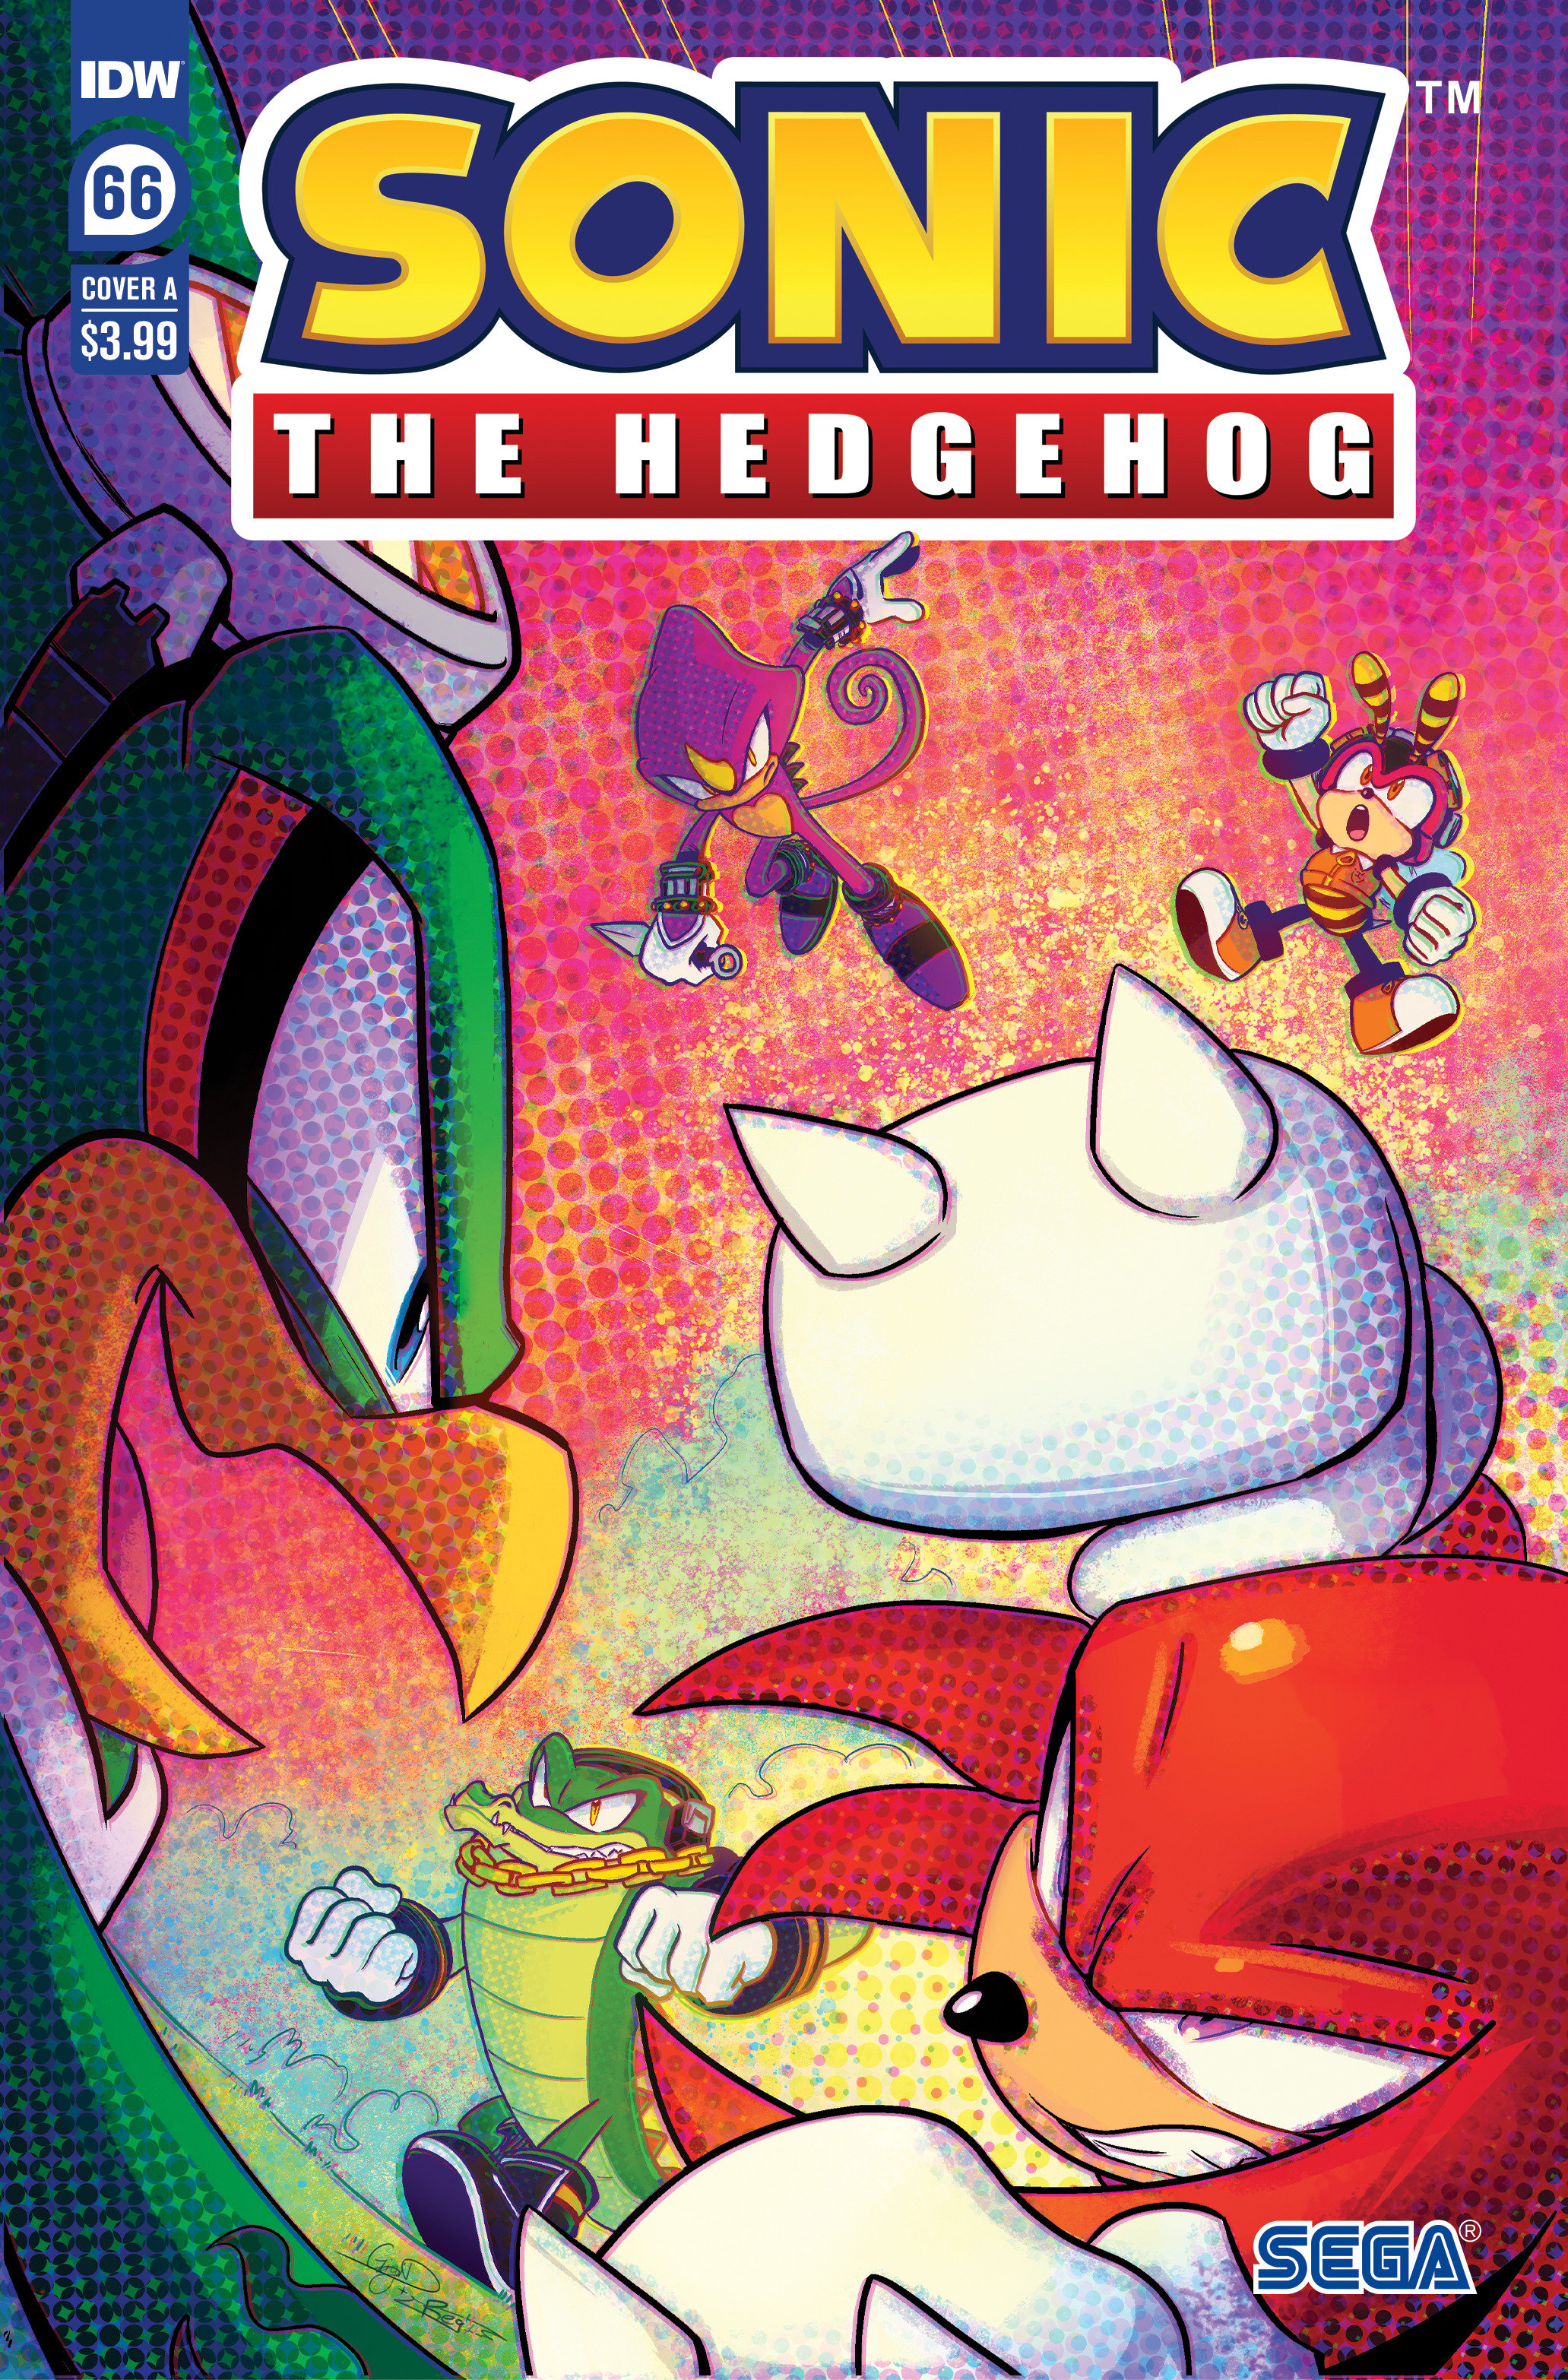 Sonic the Hedgehog #66 Cover A Dutreix